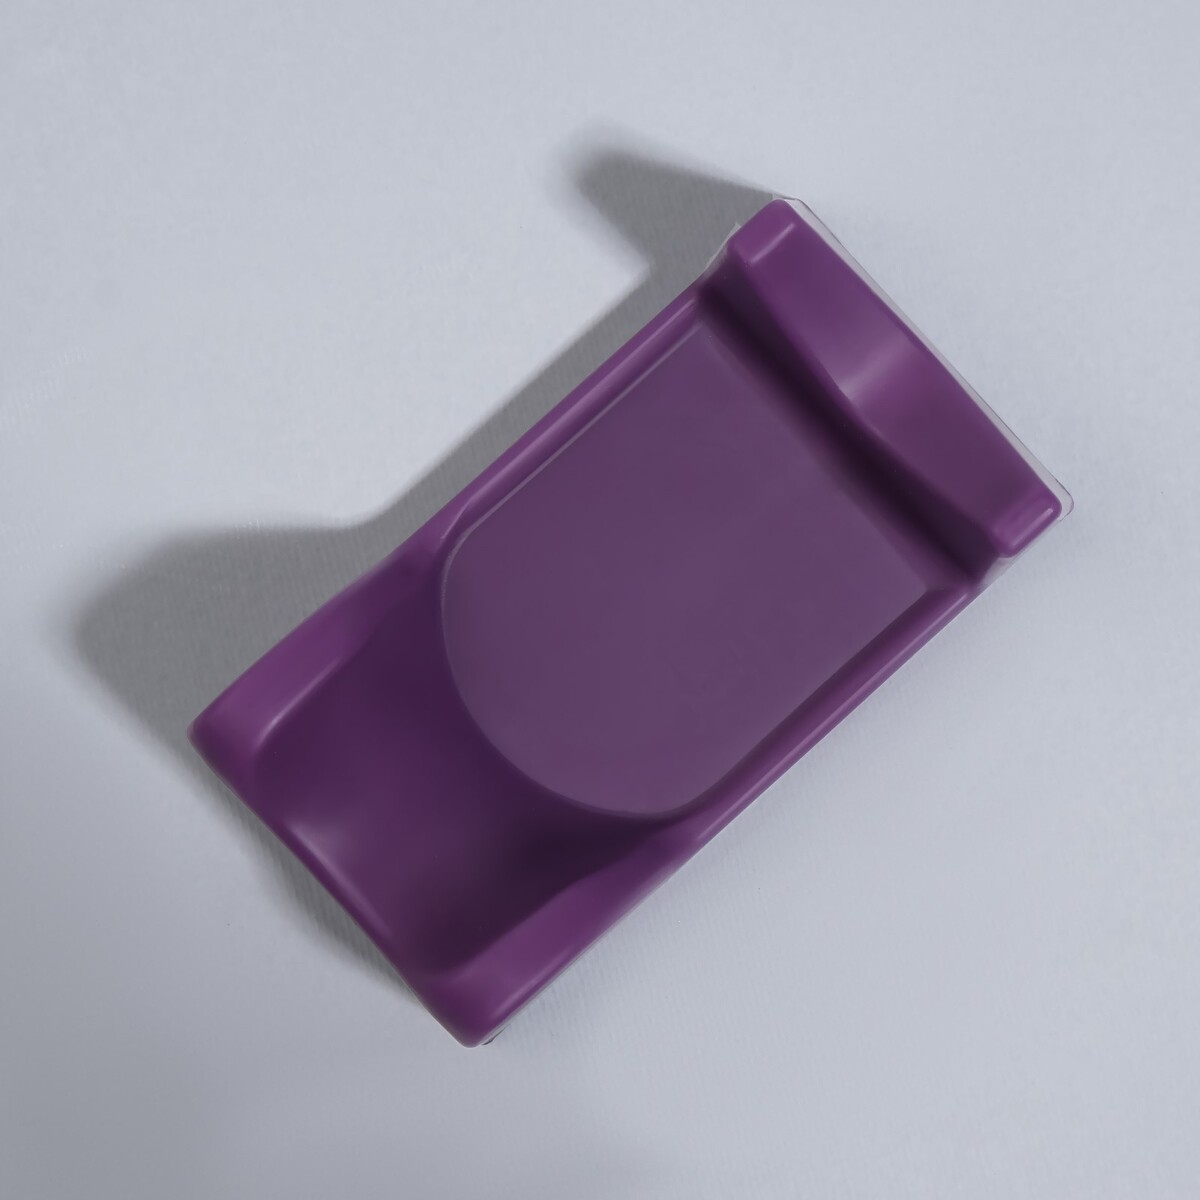 фото Подставка для ручки маникюрного аппарата, 9,8 × 4,8 × 3,6 см, цвет фиолетовый queen fair